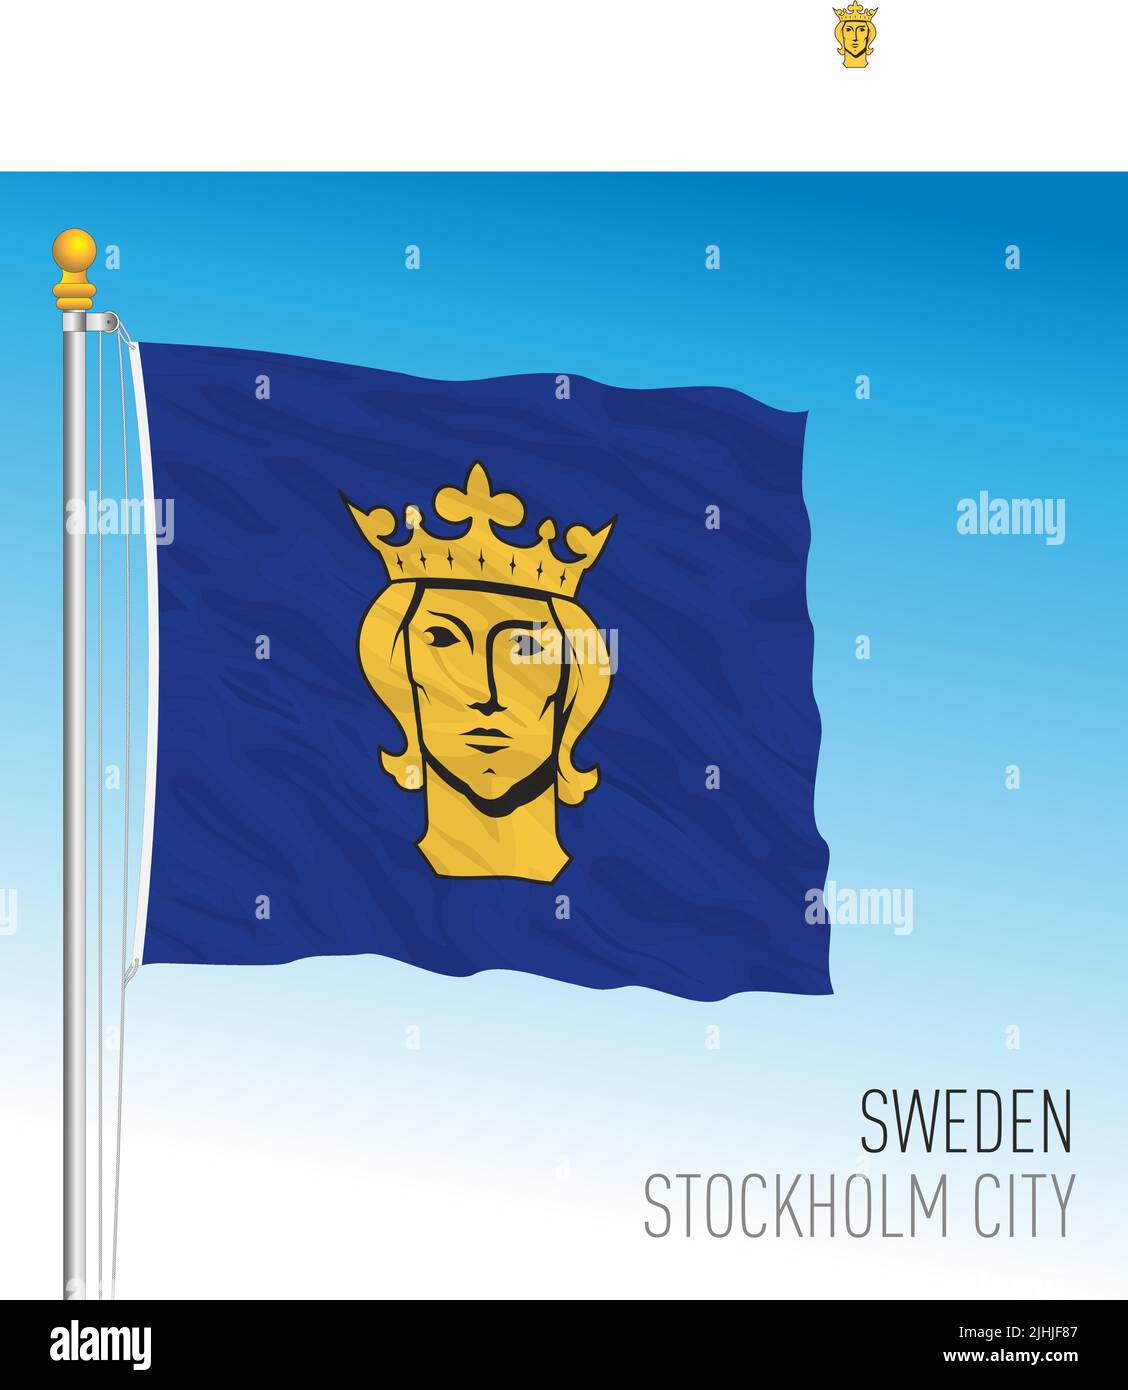 Stockholm City flag, Kingdom of Sweden, vector illustration Stock Vector